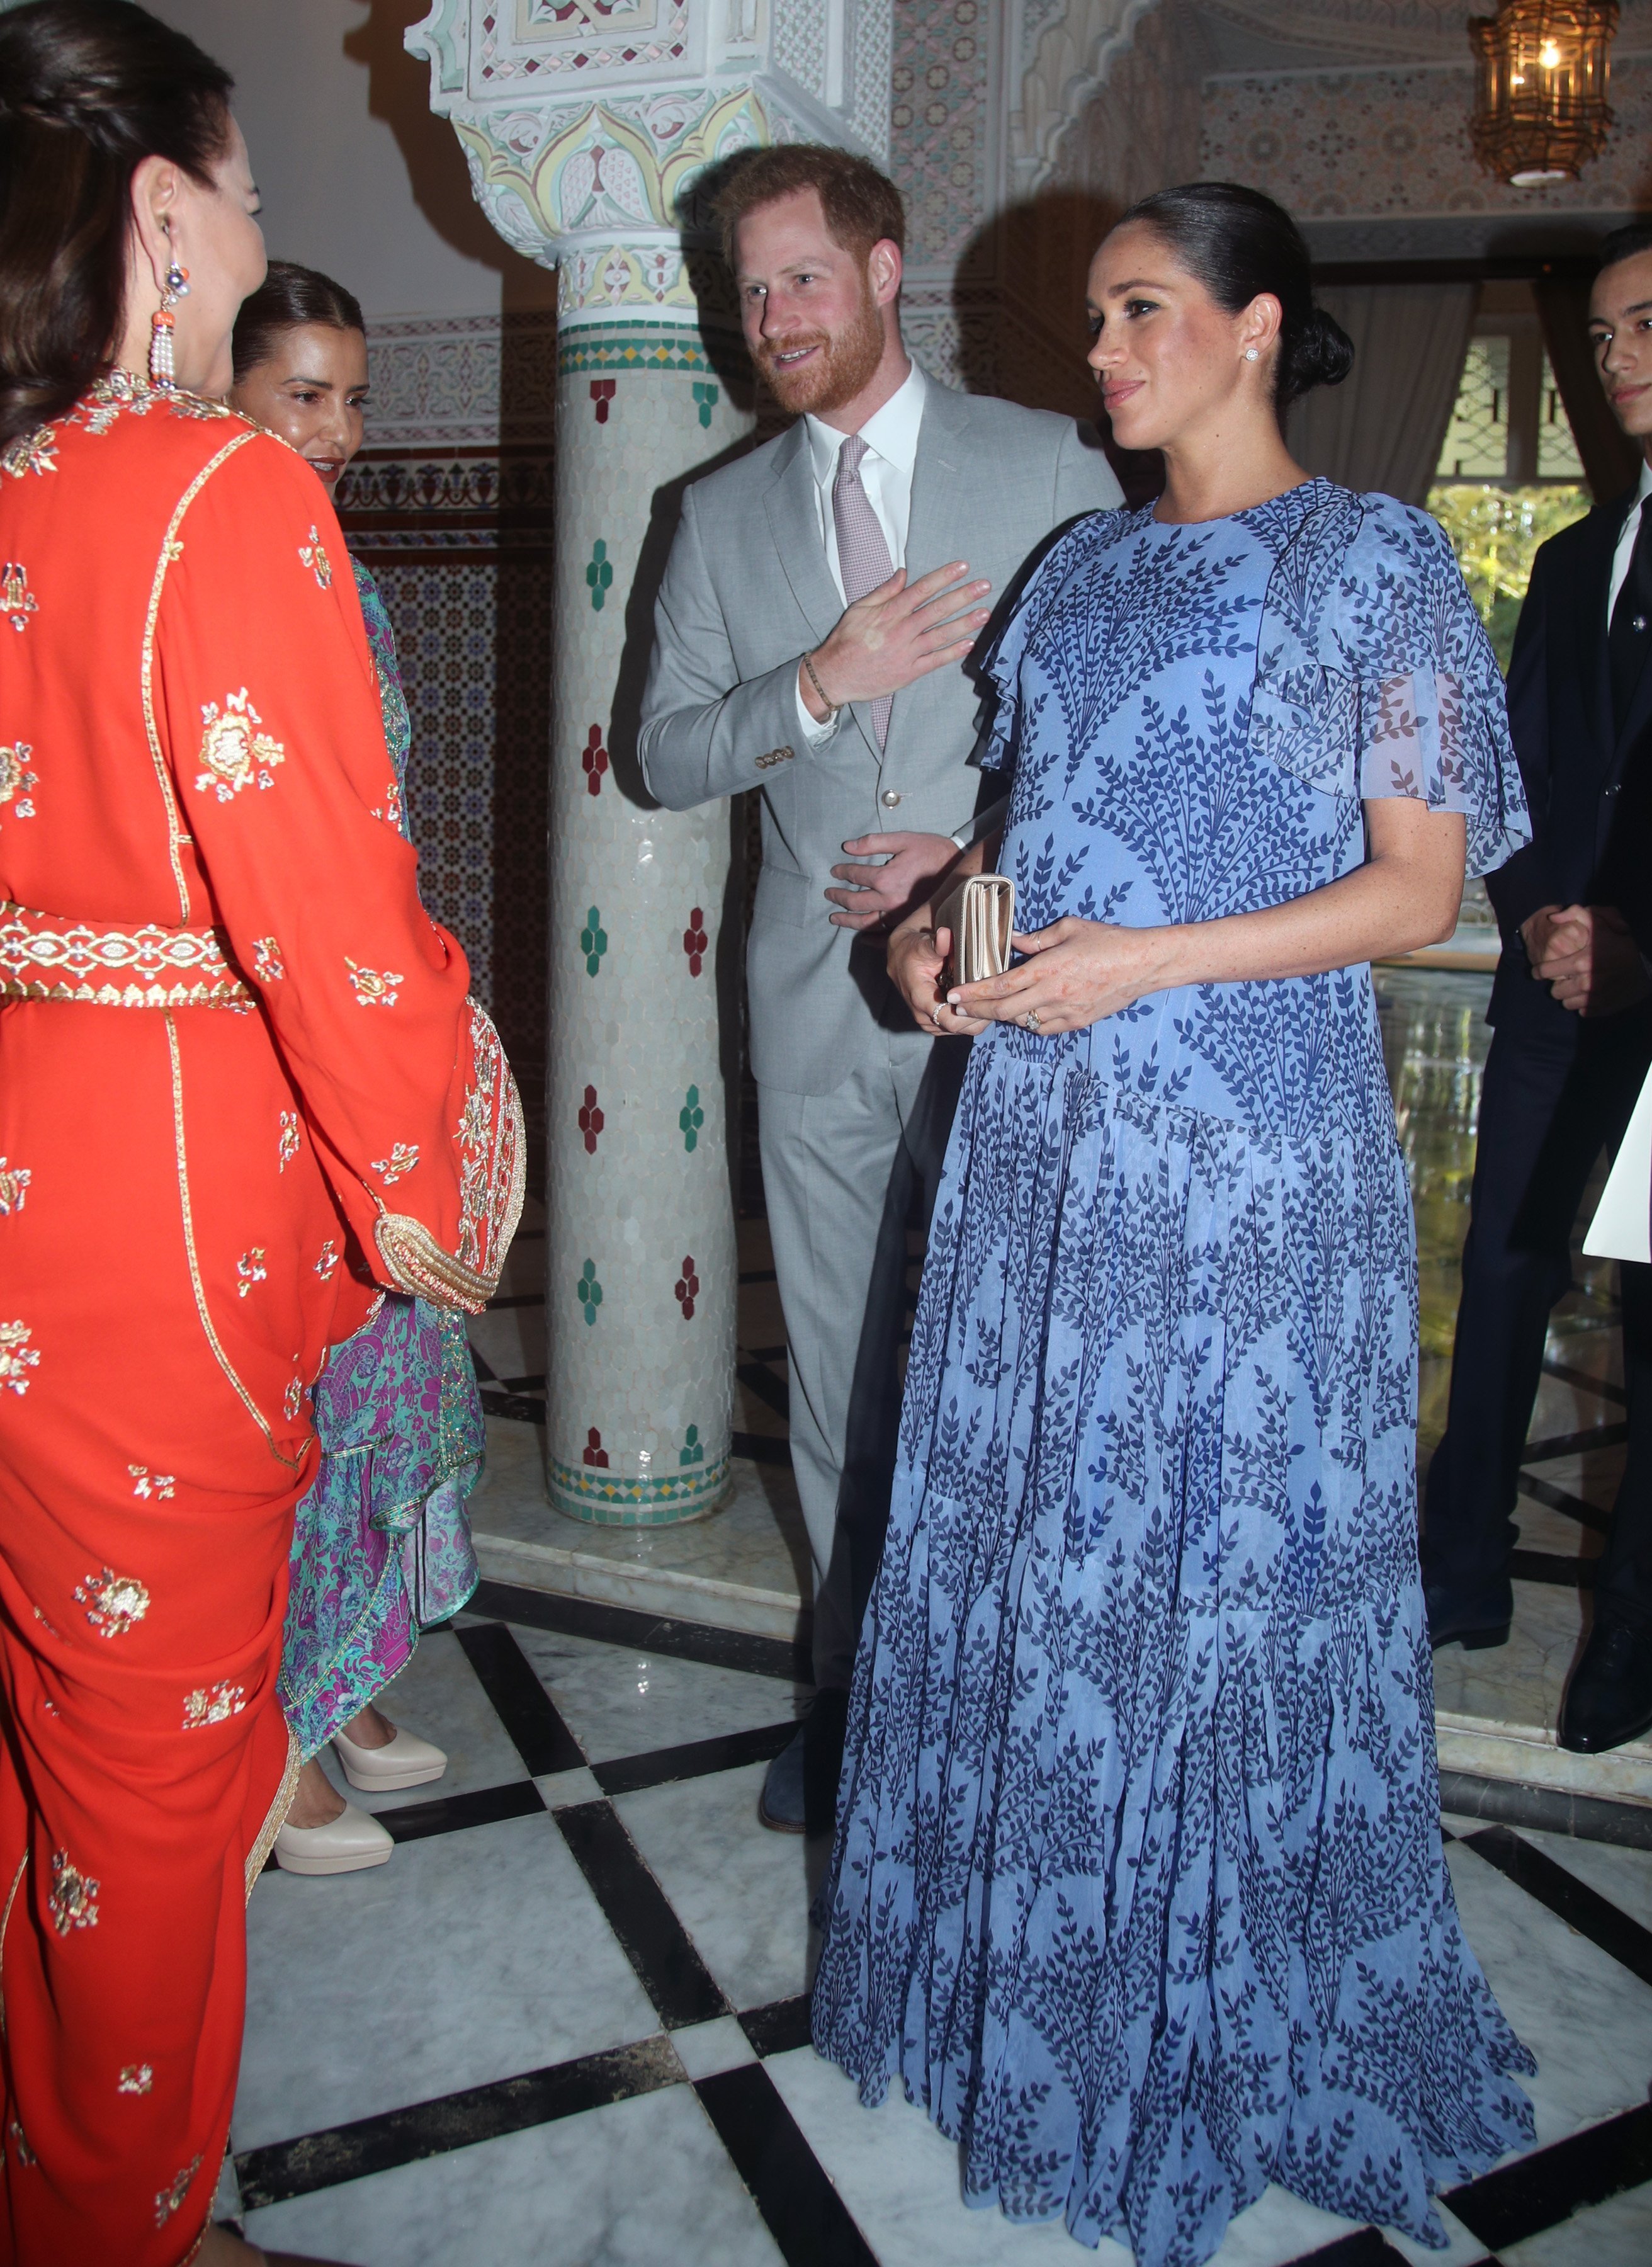 Le Prince Harry et Meghan Markle à Rabat, Maroc en février 2019 | Photo : Getty Images